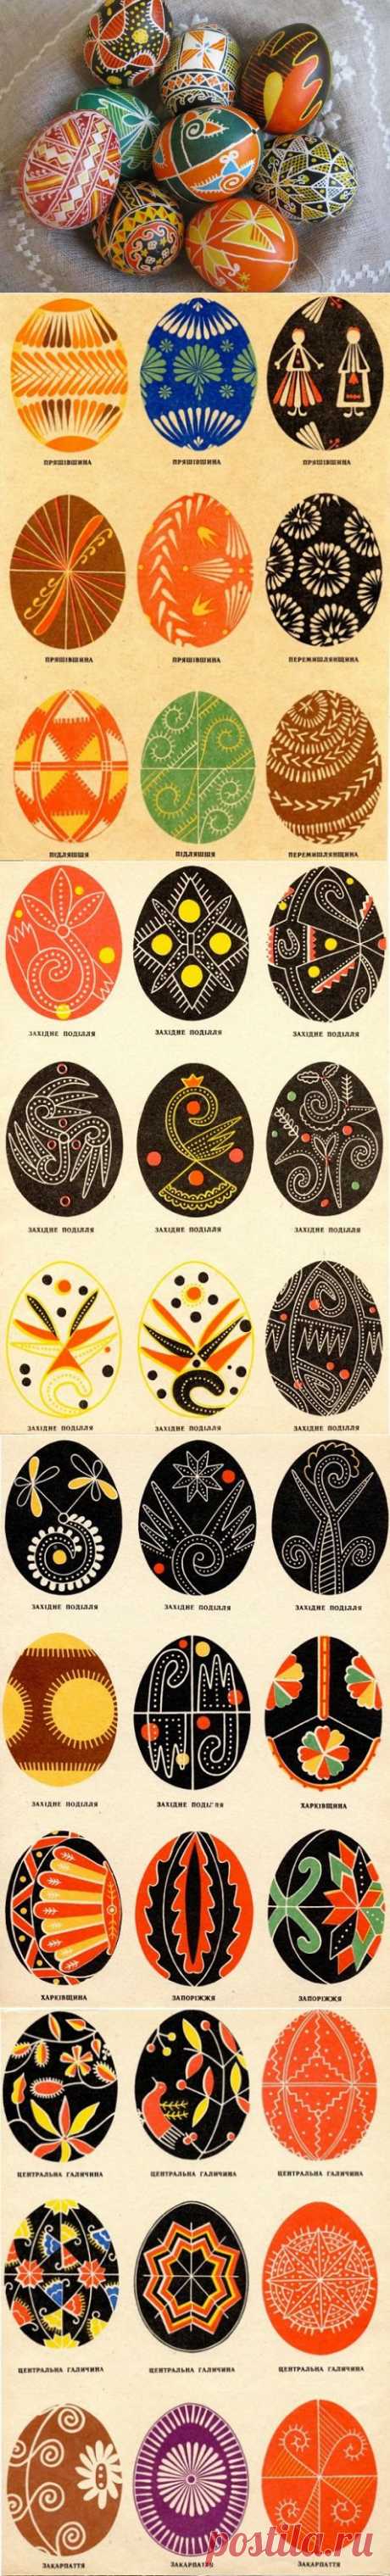 Разнообразие орнаментов пасхальных писанок, характерных для разных областей Украины